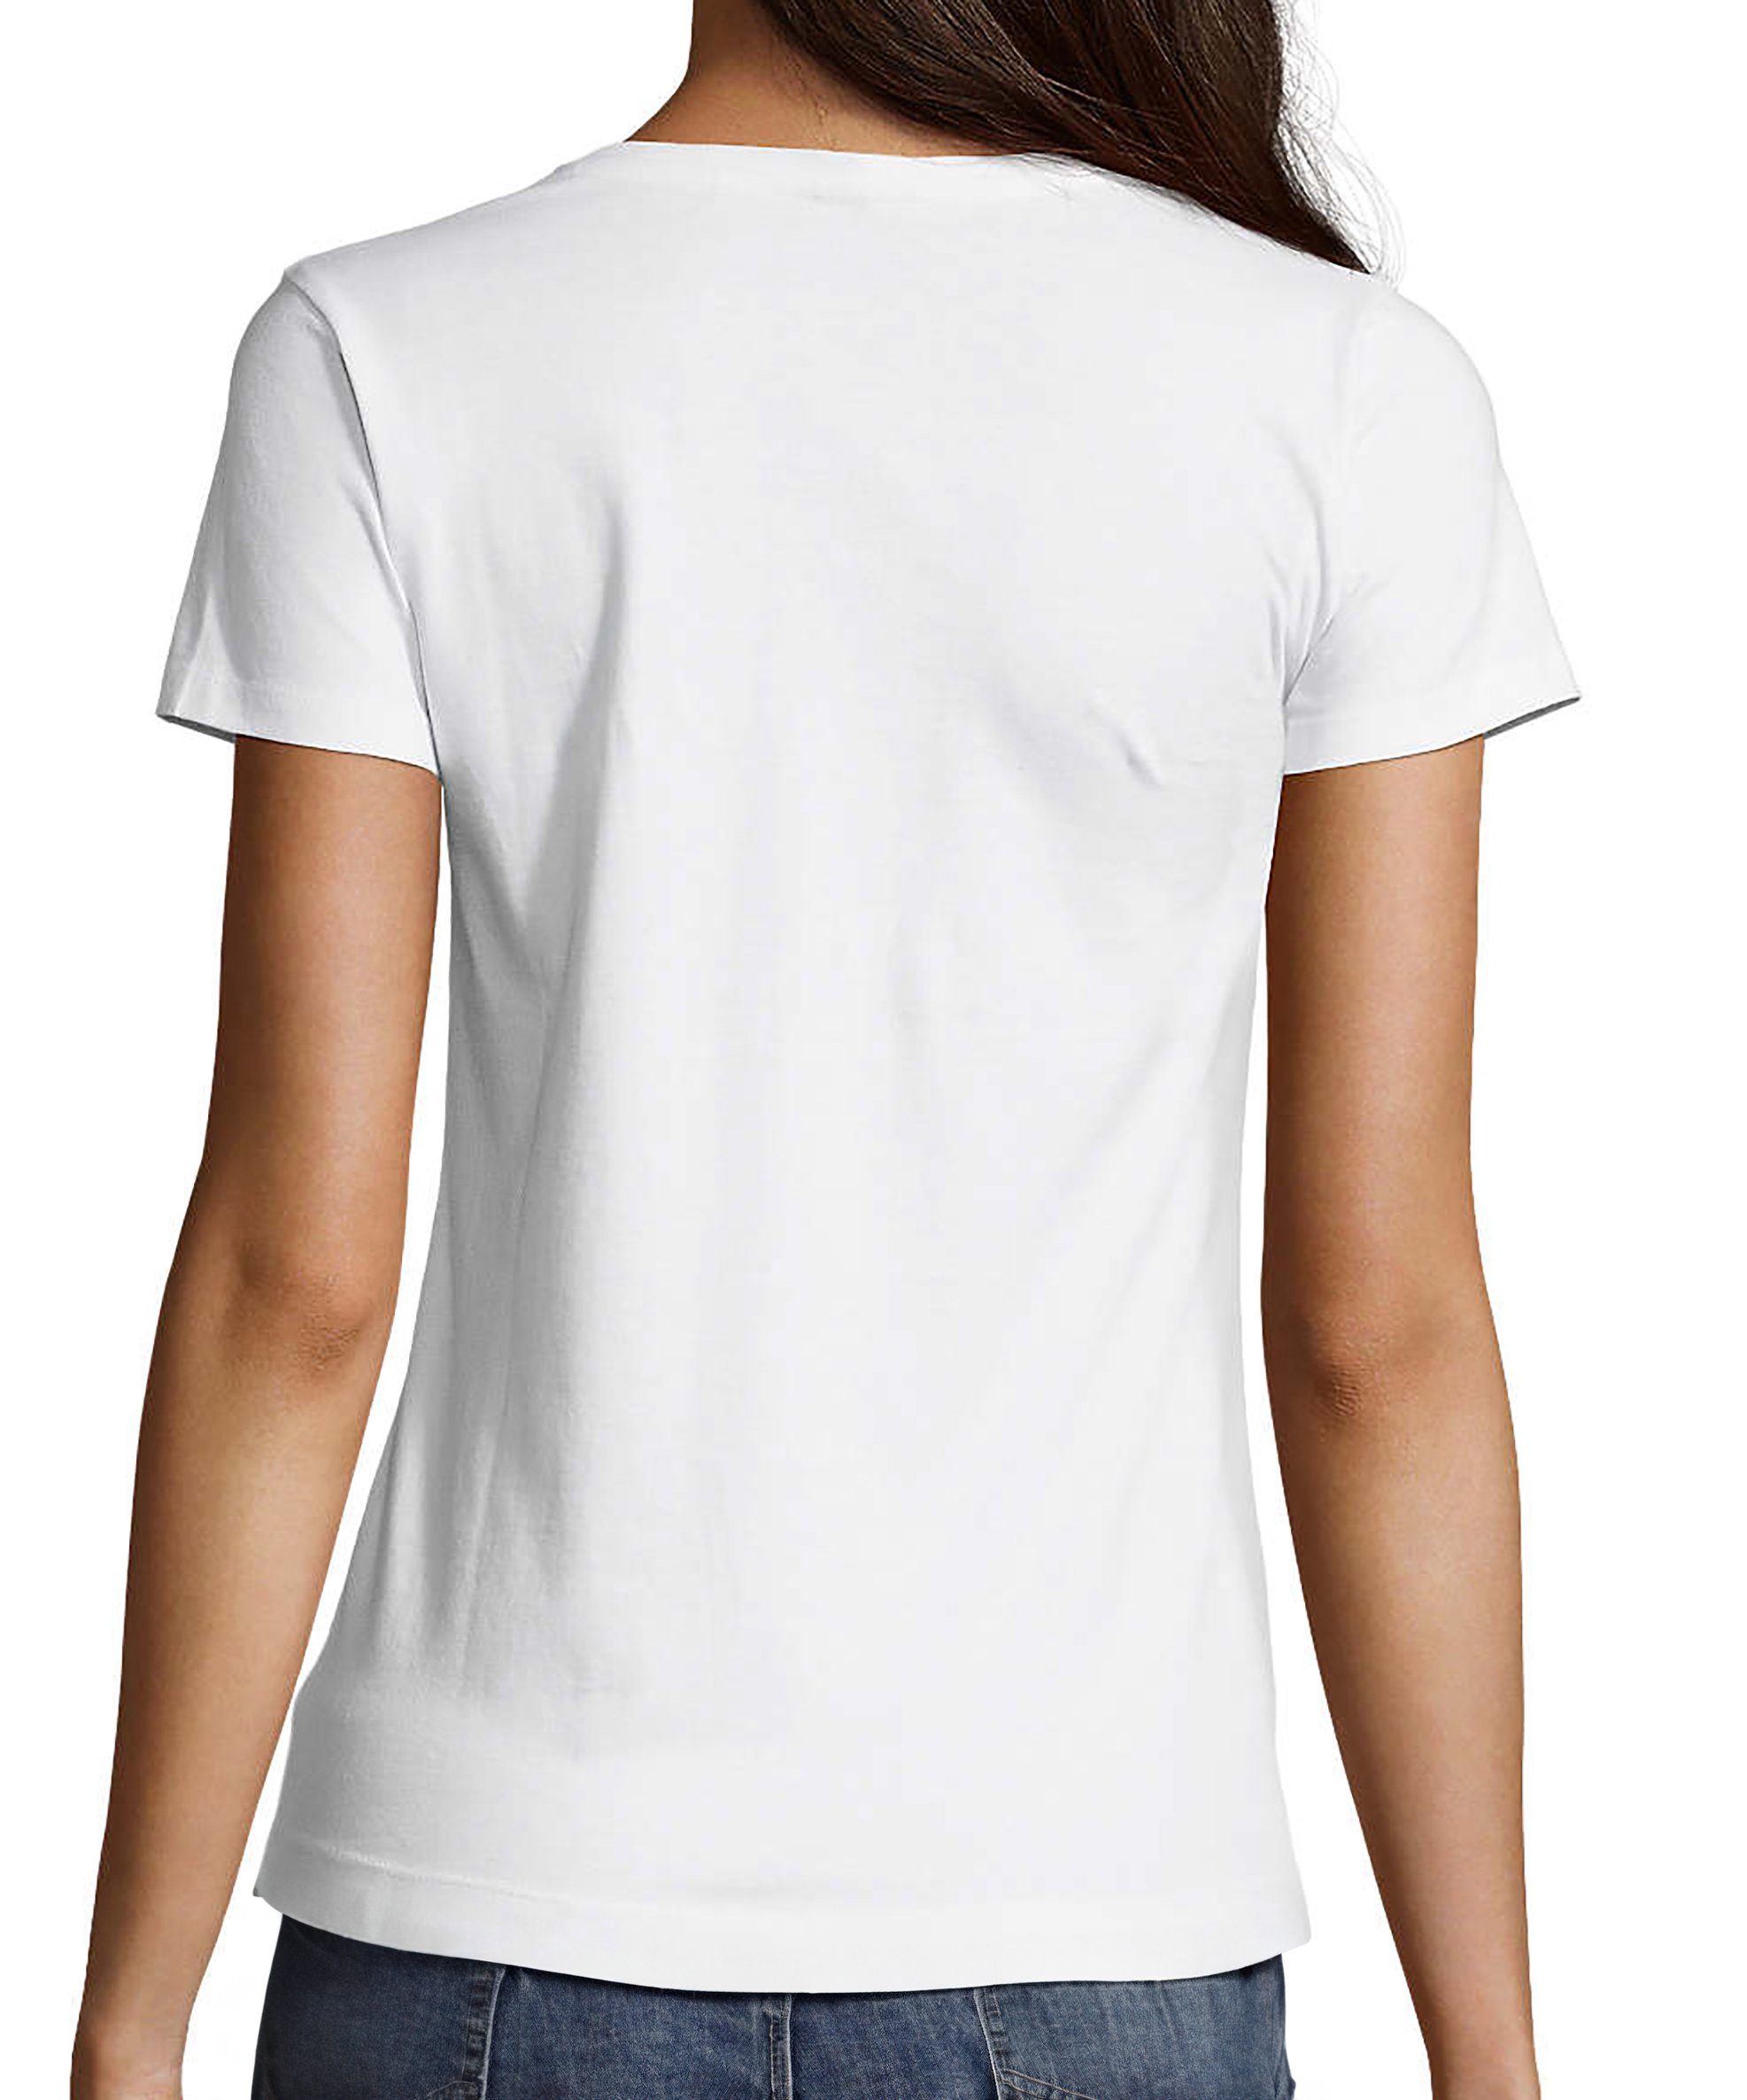 MyDesign24 T-Shirt Damen Smiley pastellfarbener Print Lächelnder Fit, Slim i297 Baumwollshirt Aufdruck mit V-Ausschnitt Smiley - Shirt weiss